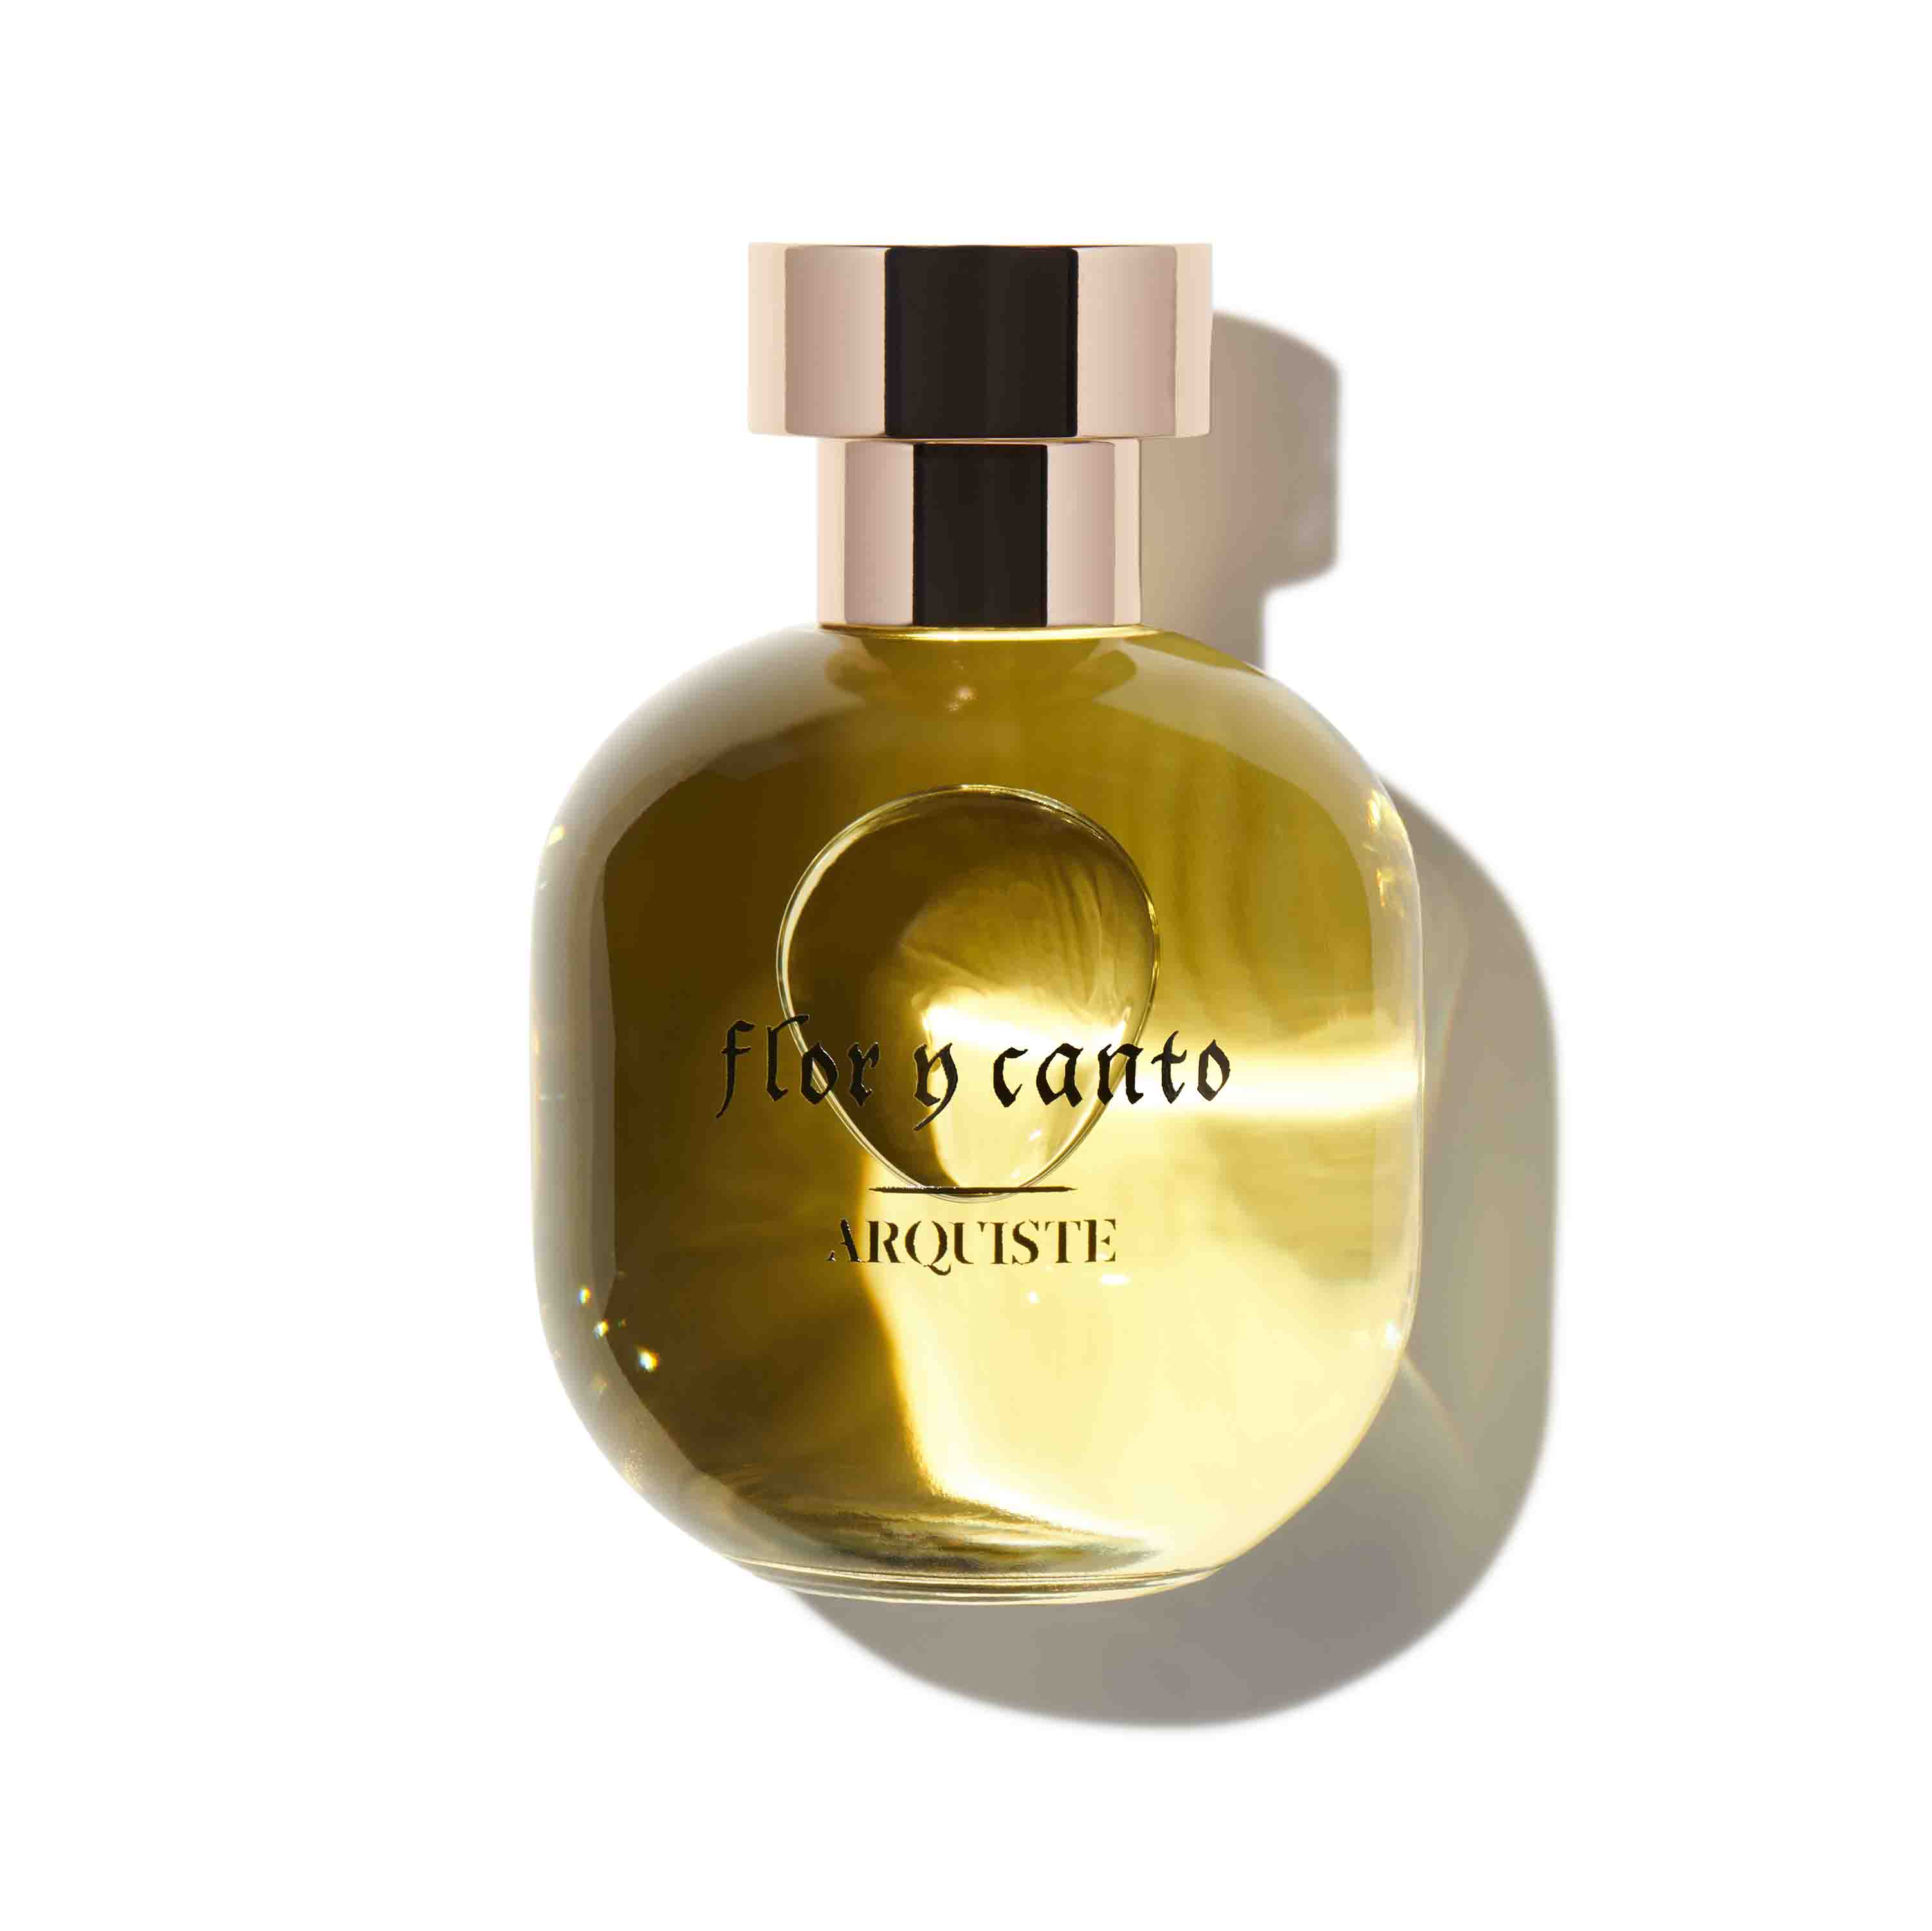 Flor Y Canto by Arquiste, 100ml Eau de Parfum